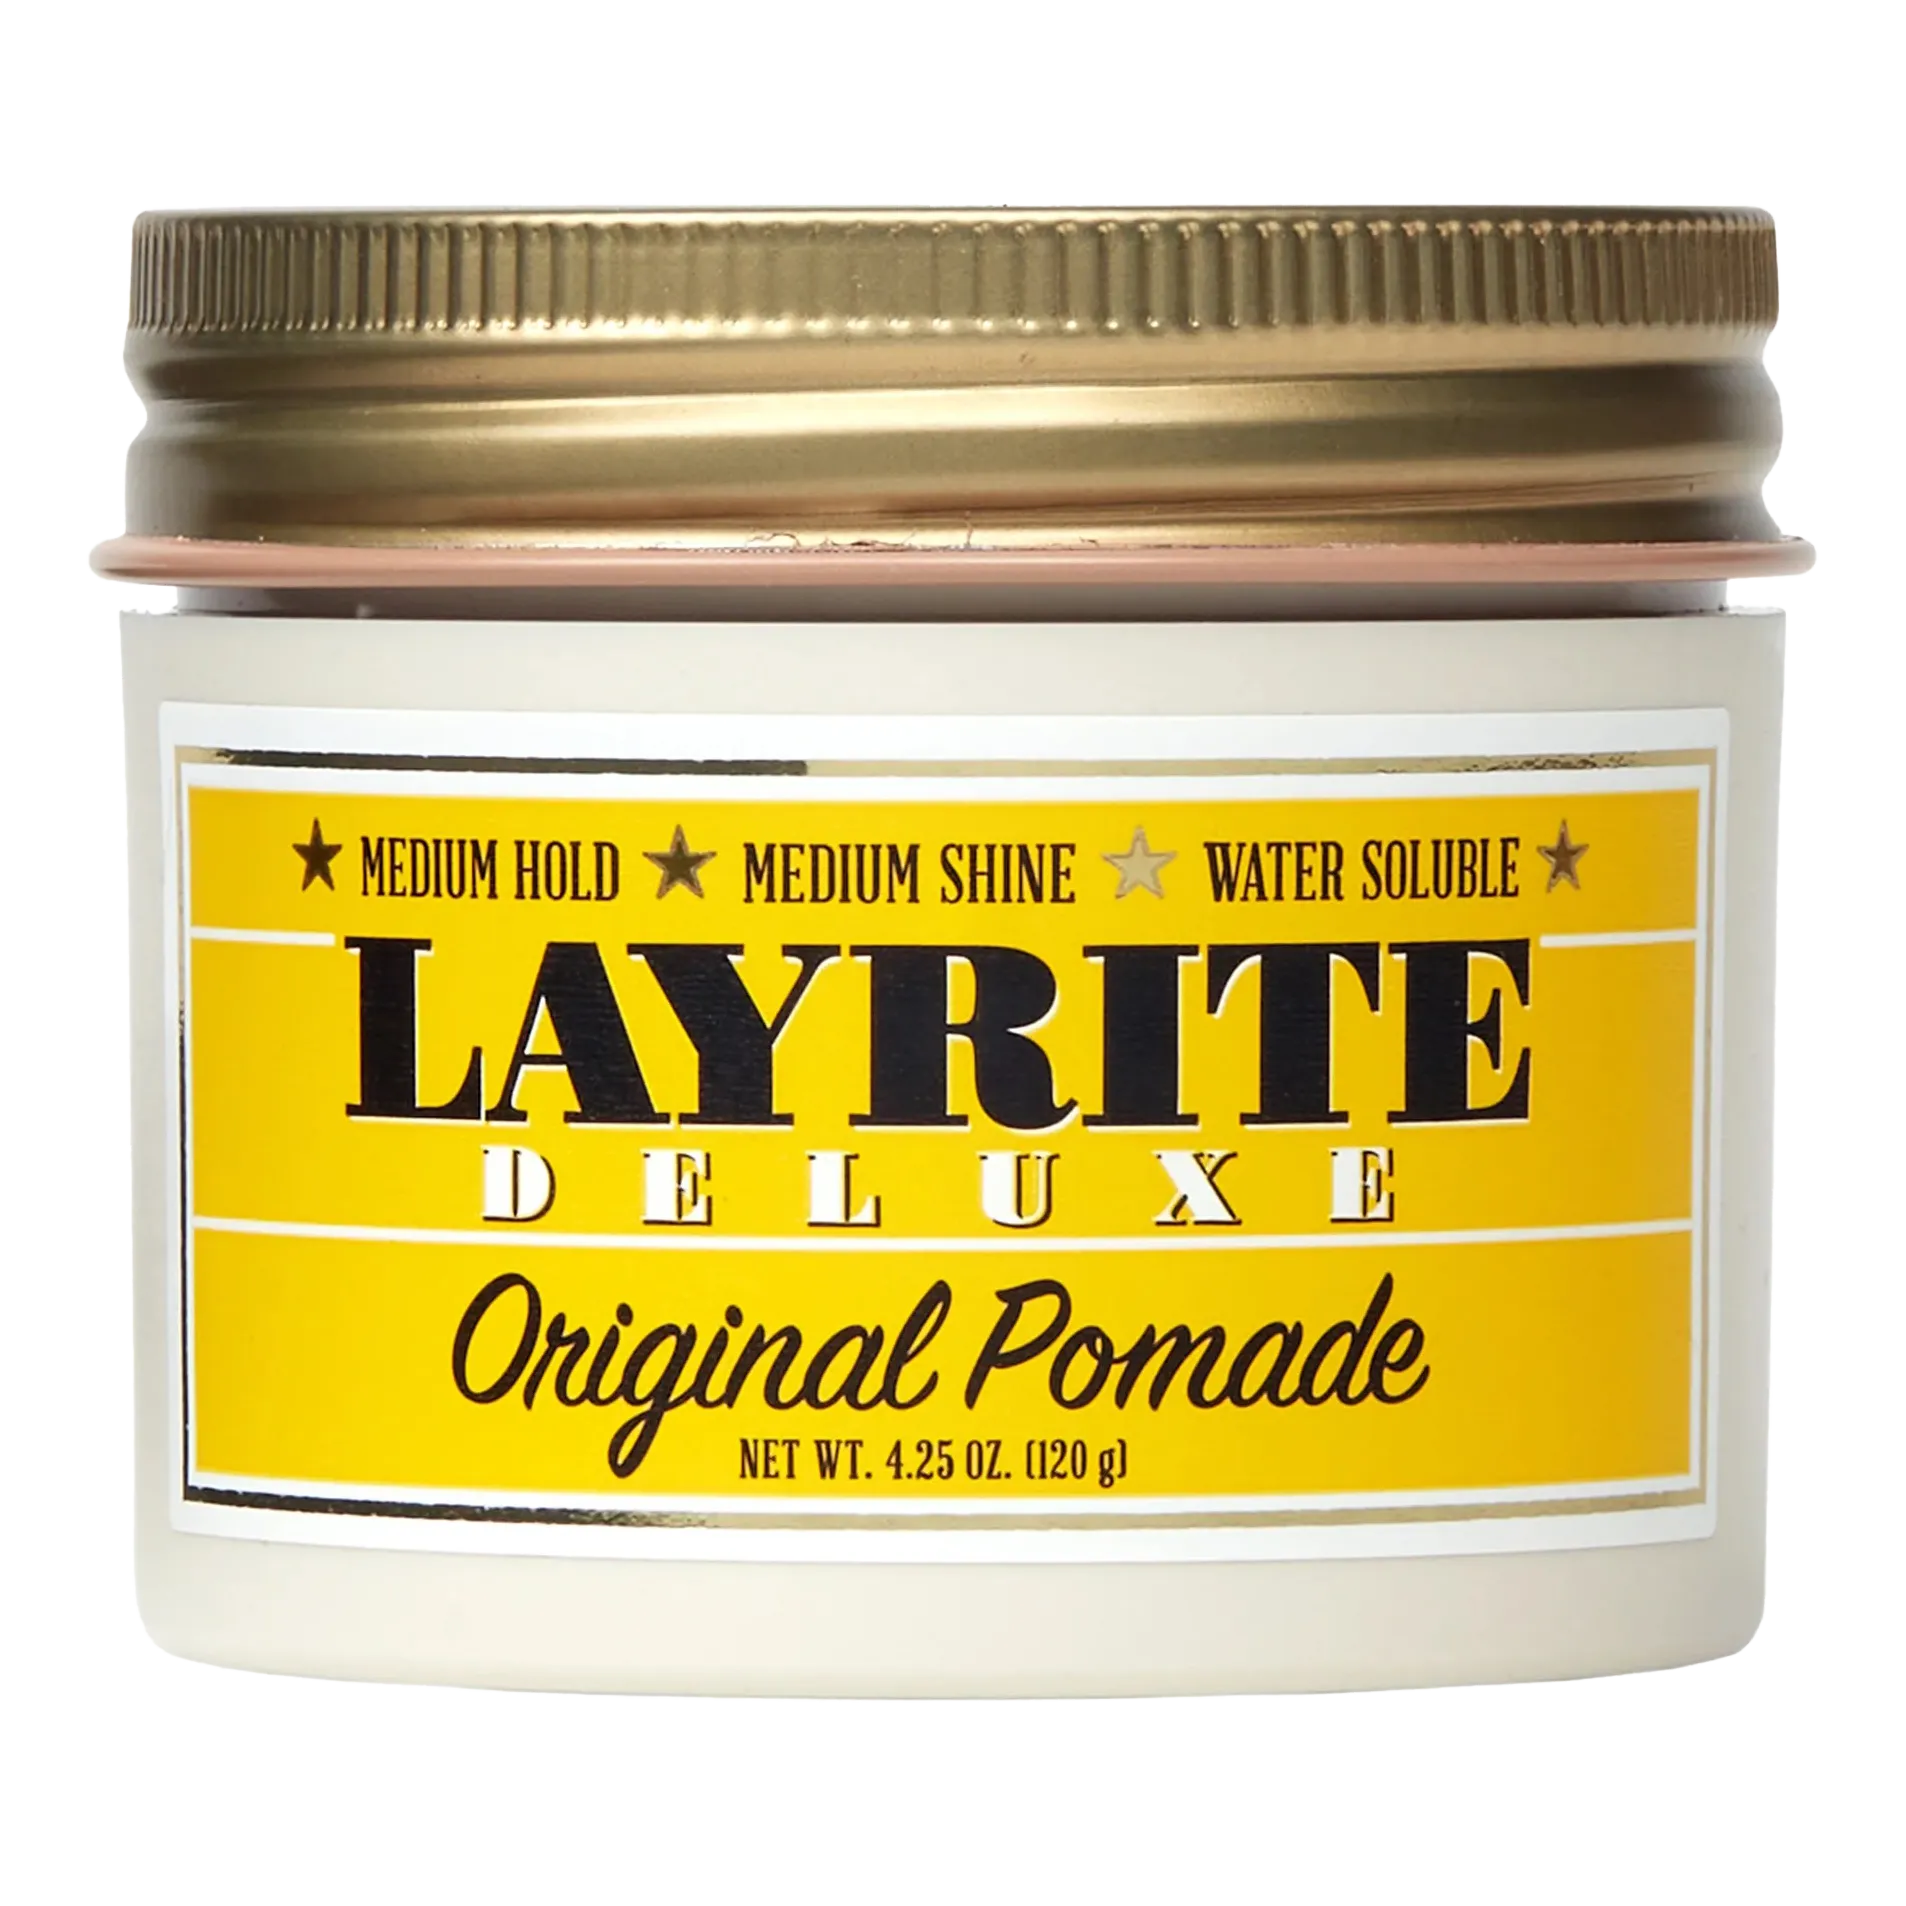 Layrite Original Pomade 120 g 